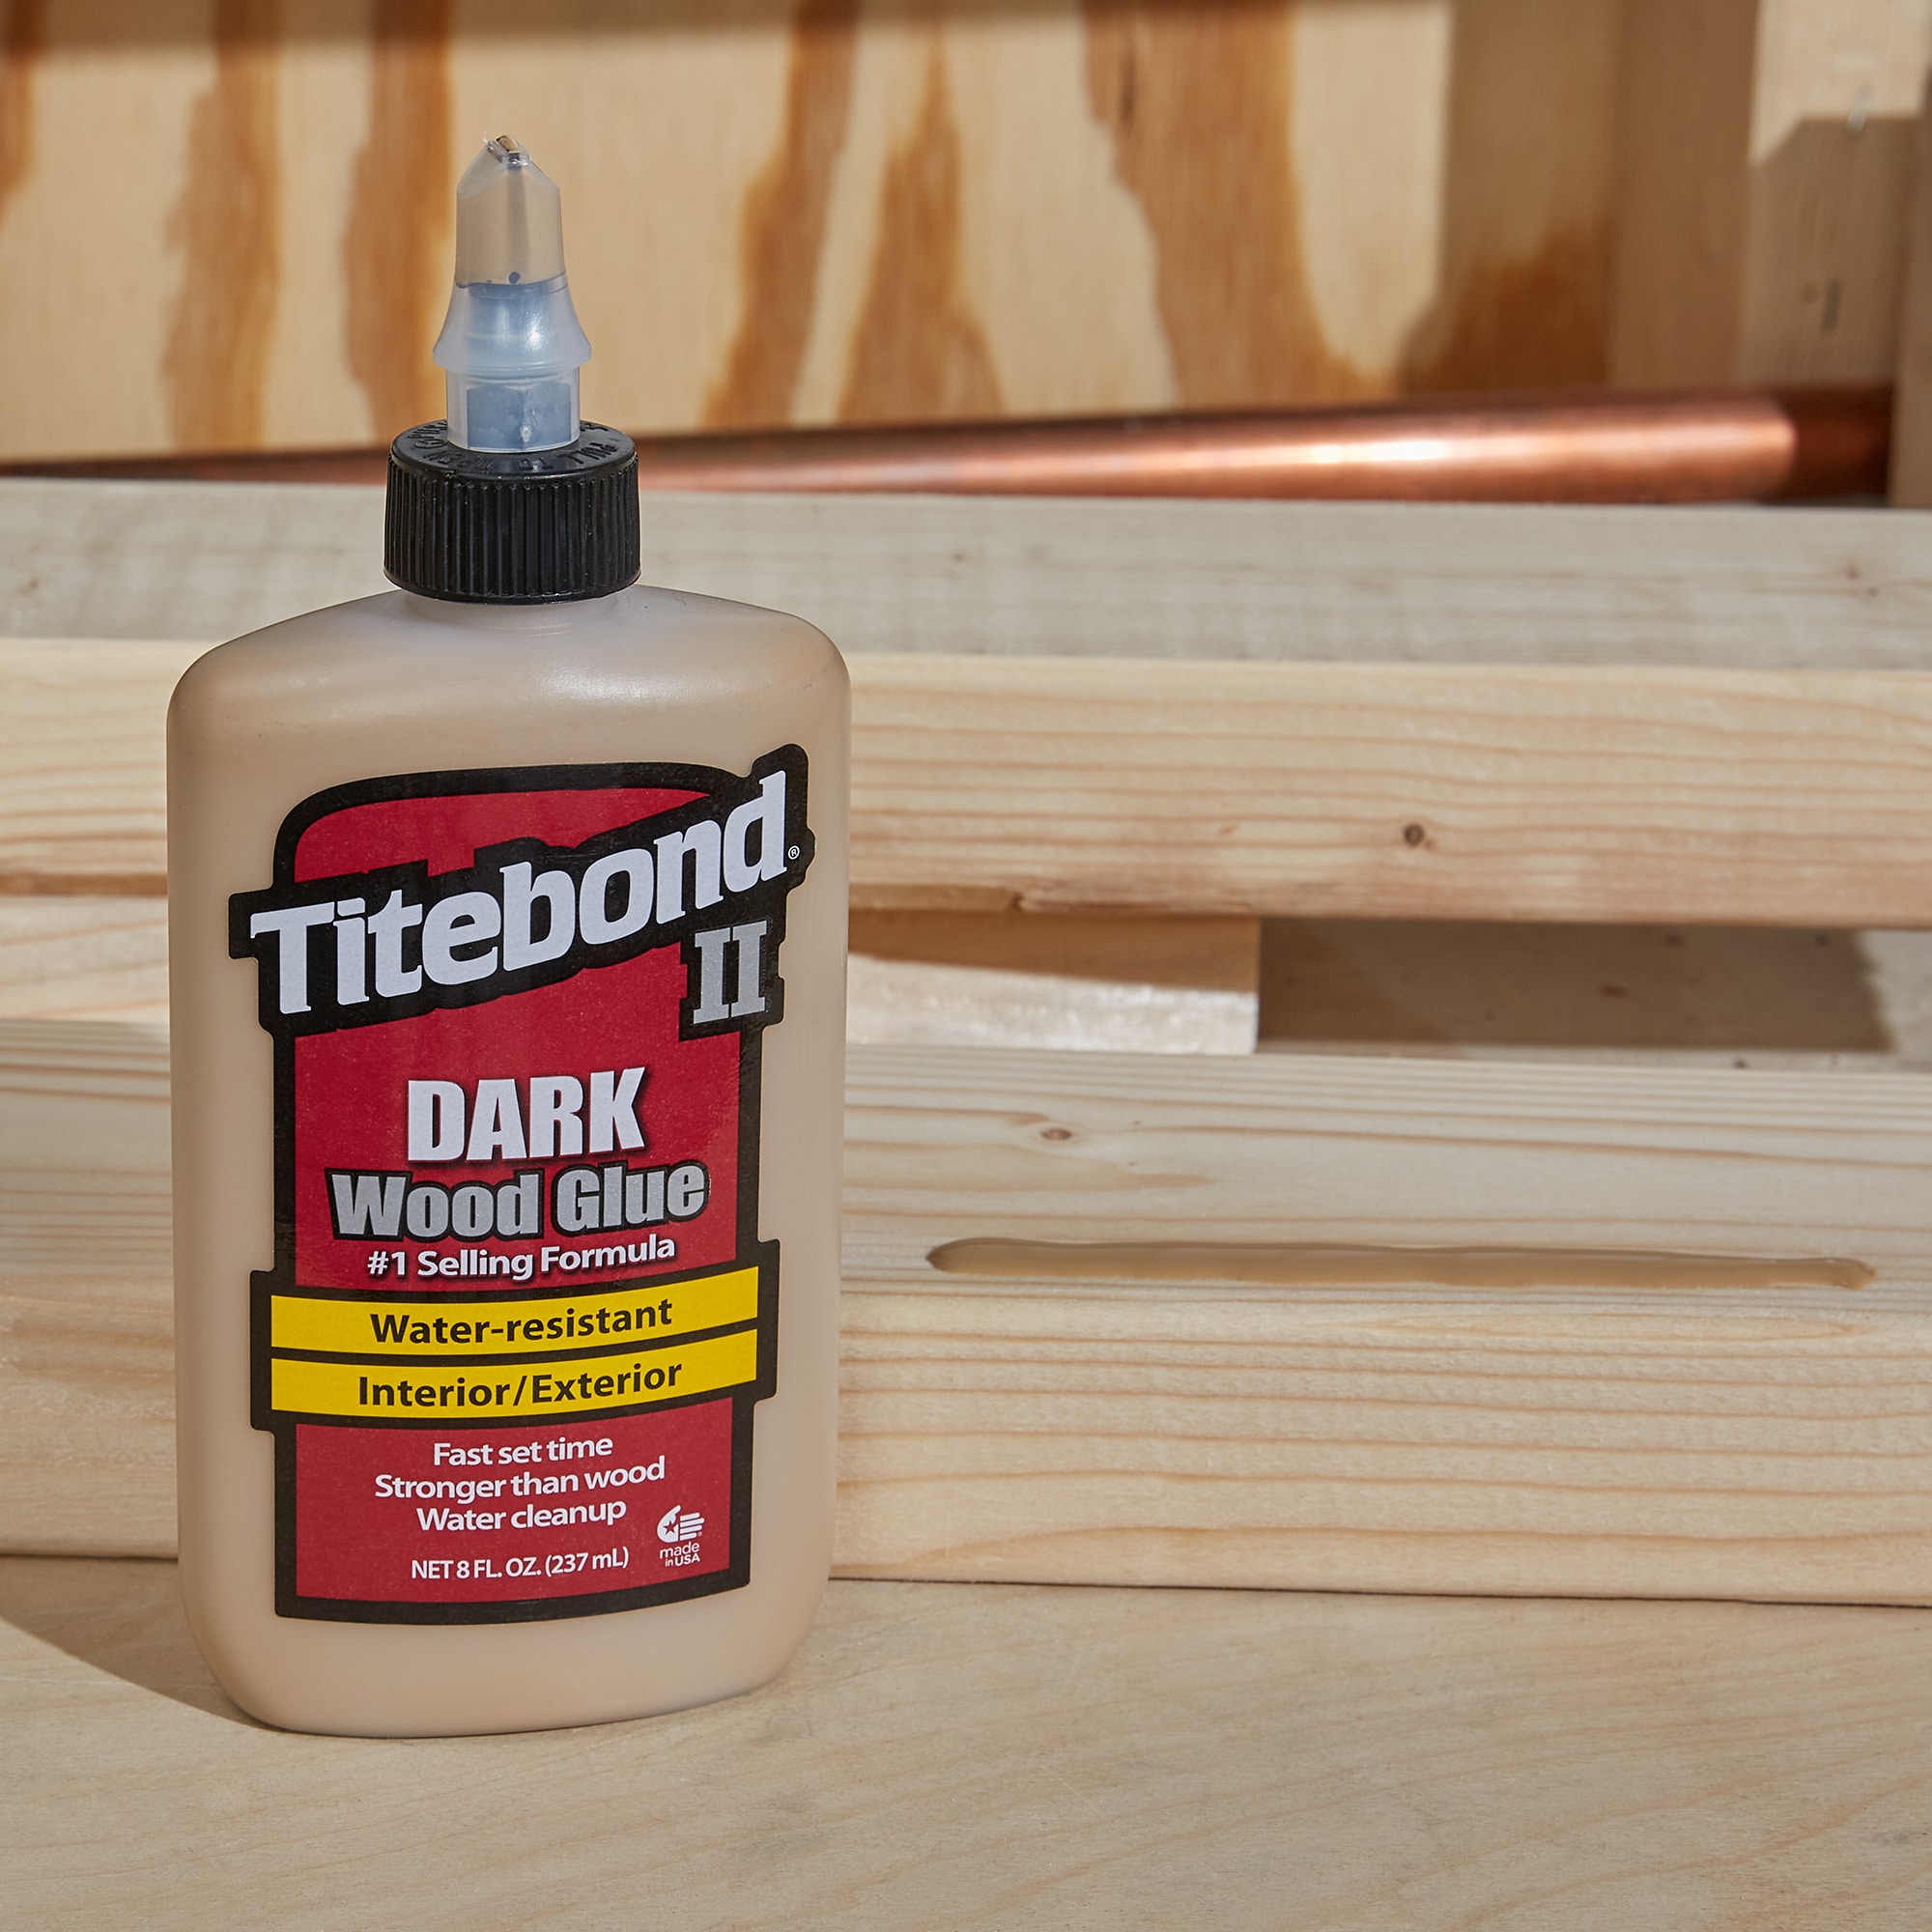 Titebond® Liquid Hide Wood Glue